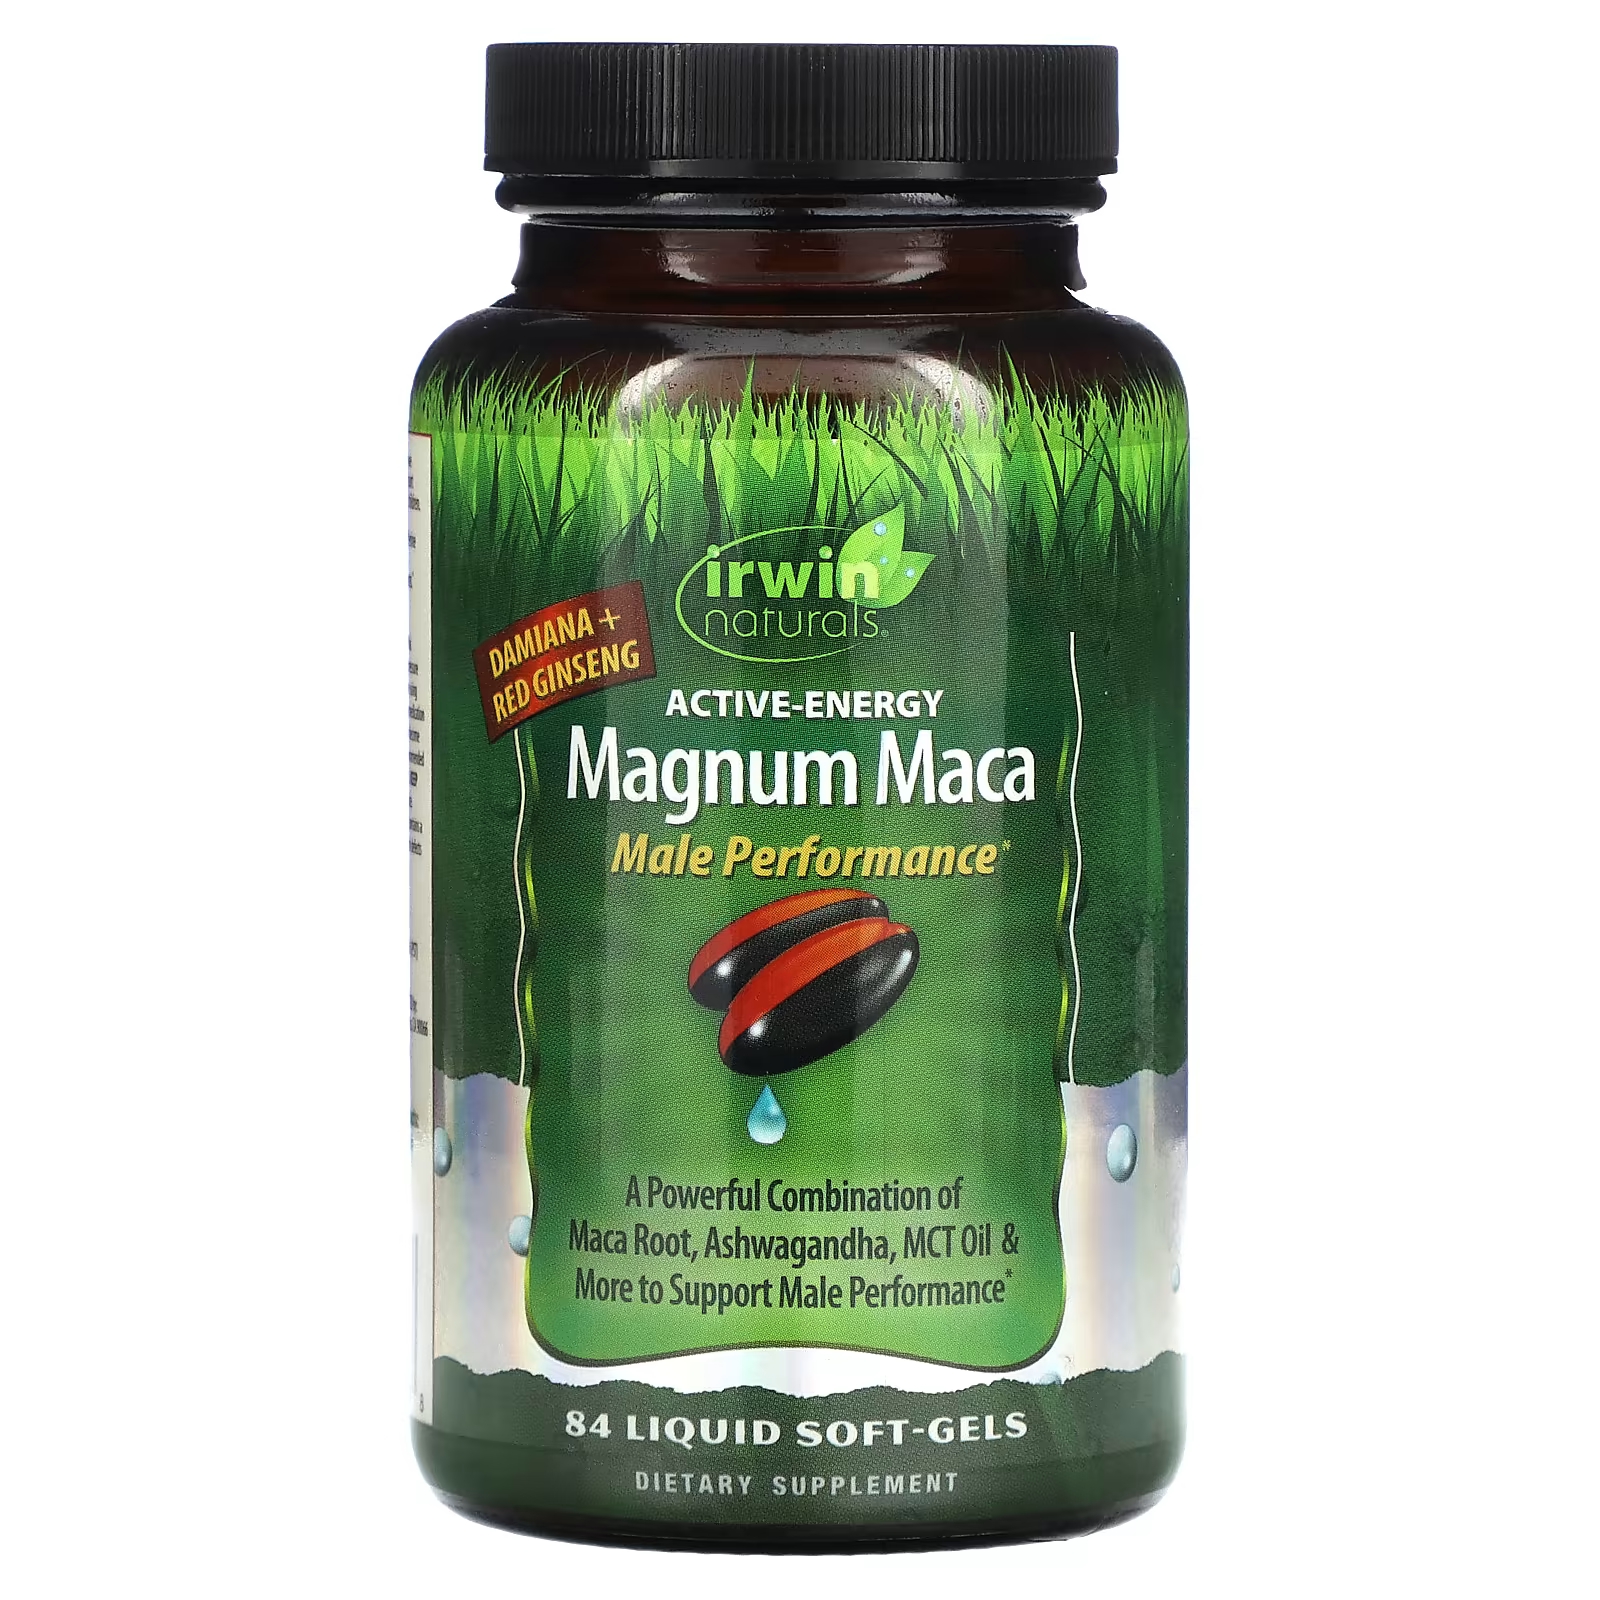 Пищевая добавка Irwin Naturals Magnum Maca Male Performance, 84 жидкие капсулы пищевая добавка irwin naturals magnum maca male performance 84 жидкие капсулы